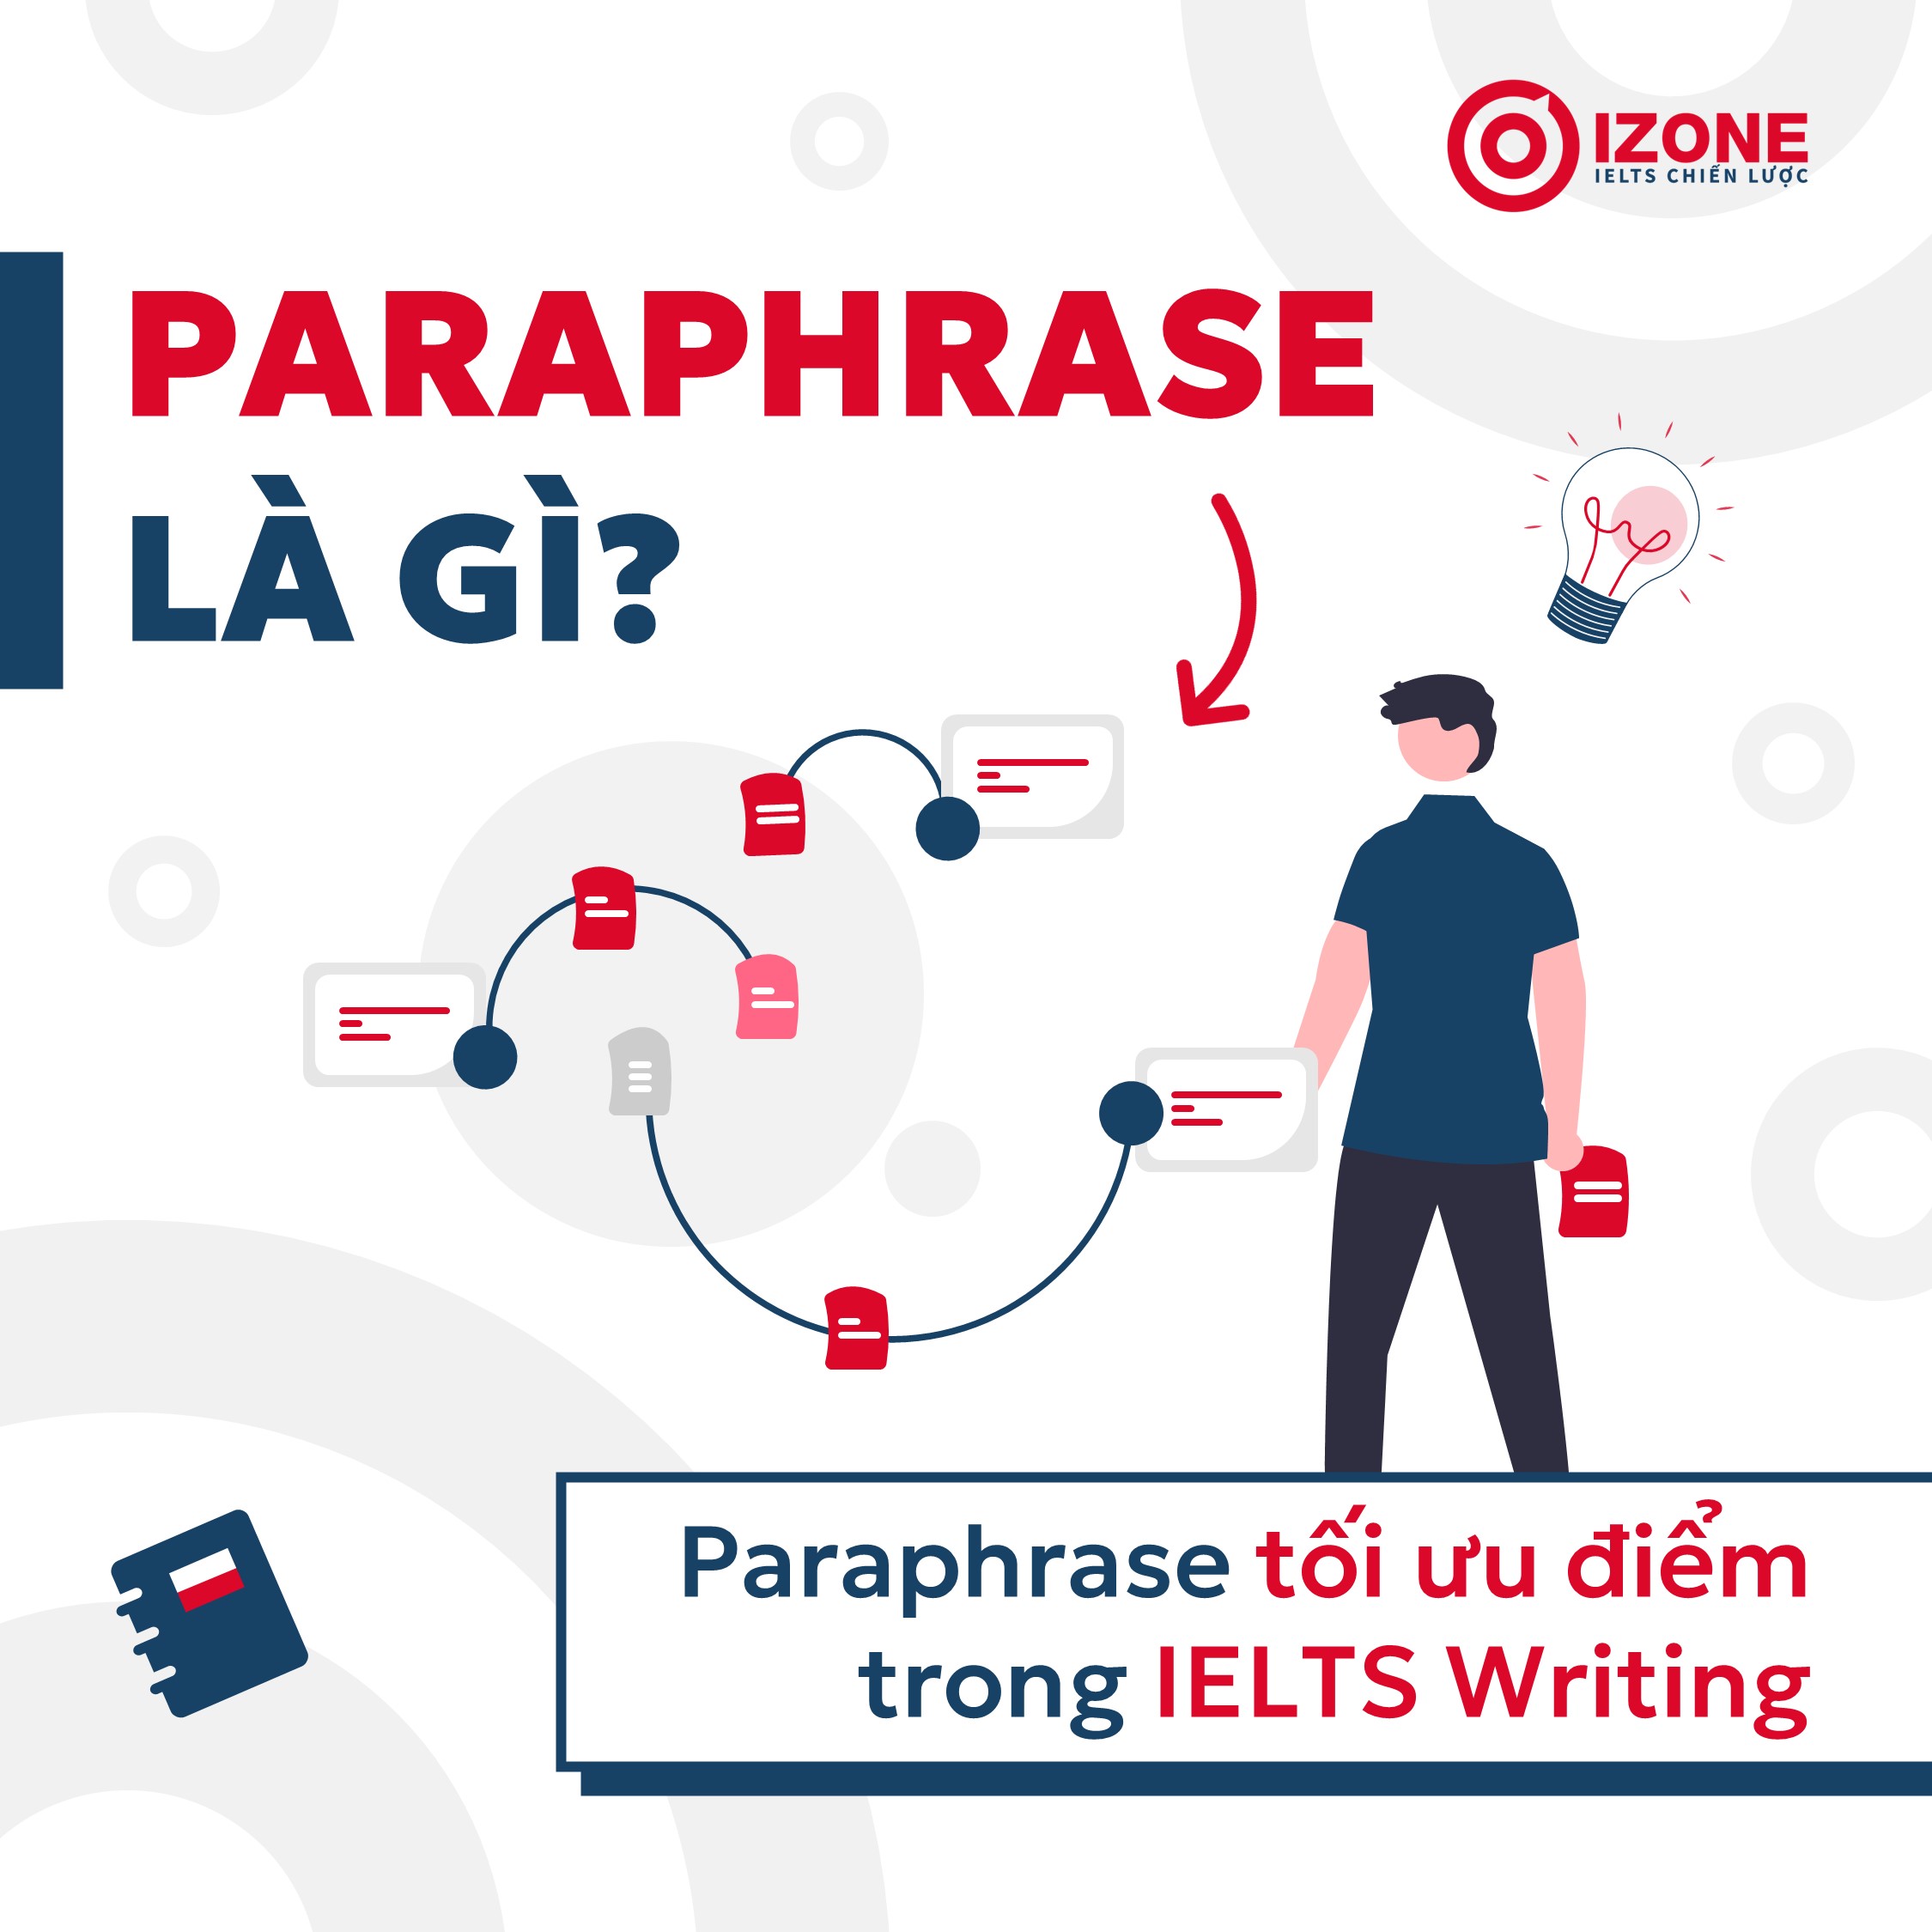 Paraphrase là gì? Sử dụng Paraphrase tối ưu điểm trong IELTS Writing ra sao?